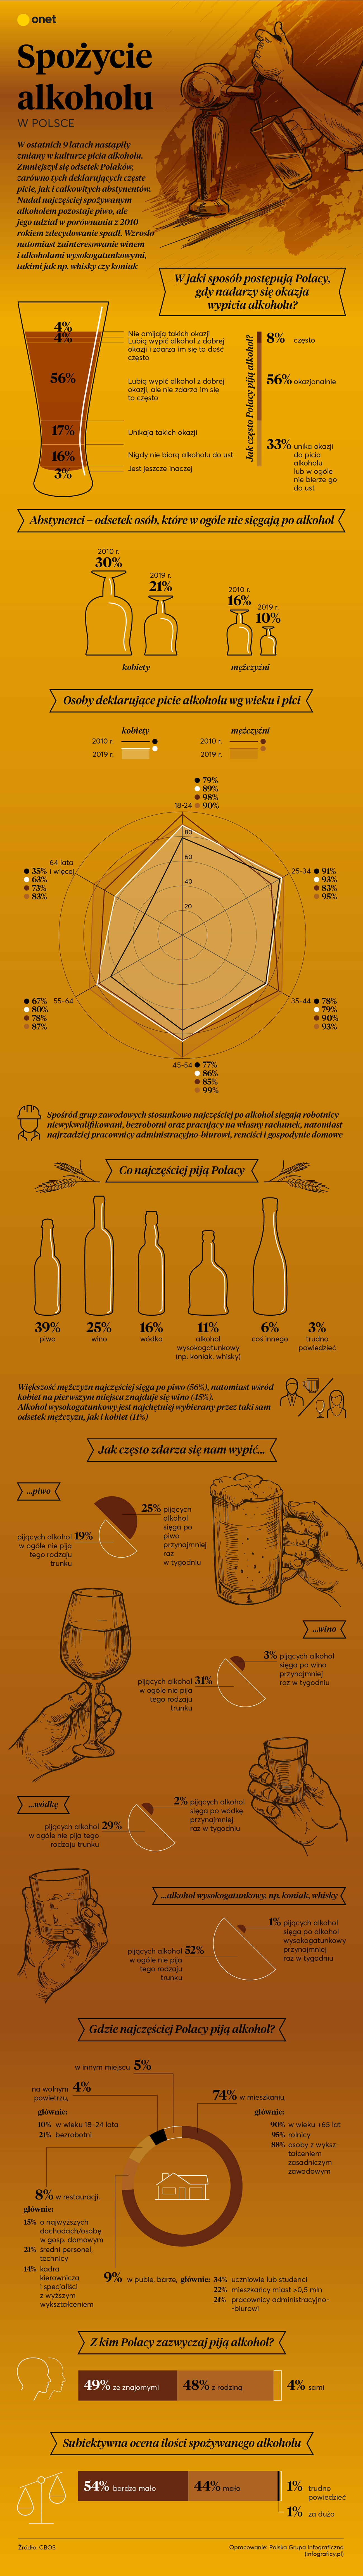 Spożycie alkoholu w Polsce